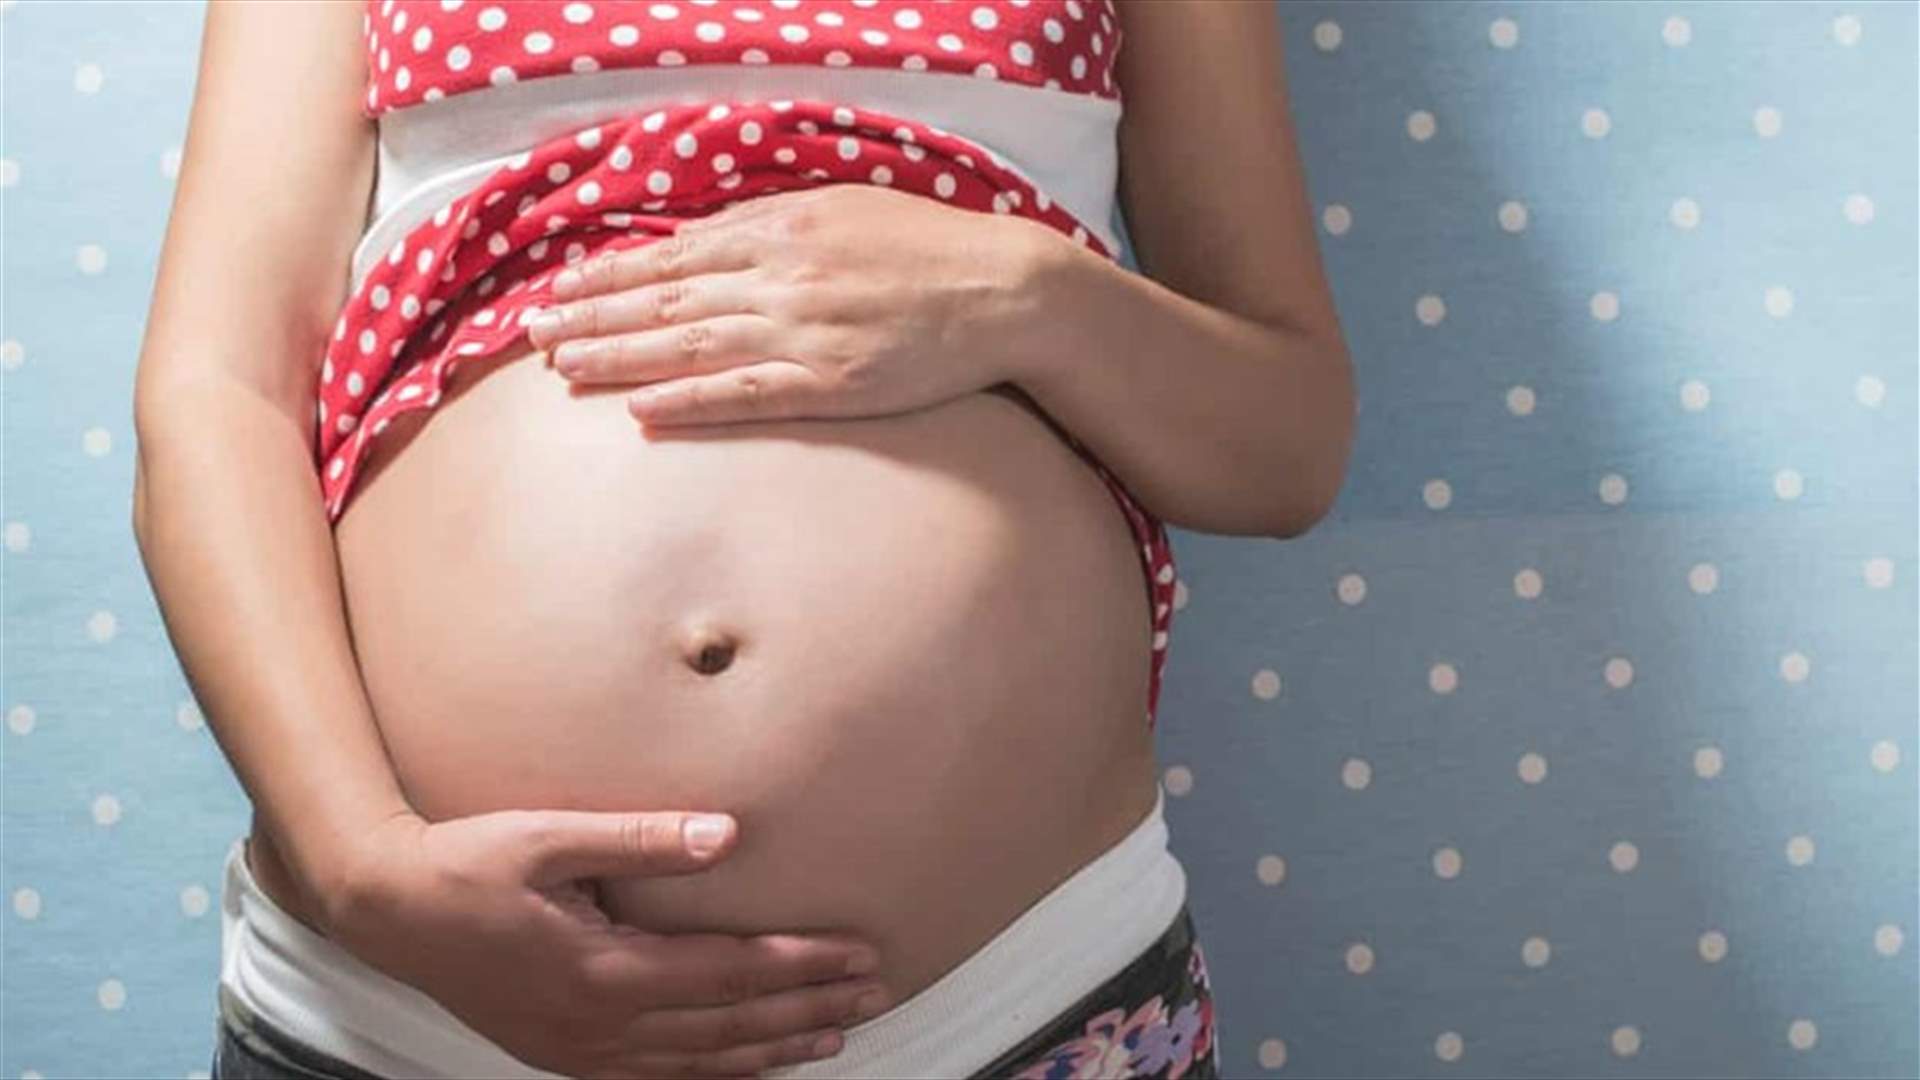 دراسة جديدة تكشف... لا دليل على وجود صلة بين الولادة القيصرية والسمنة!